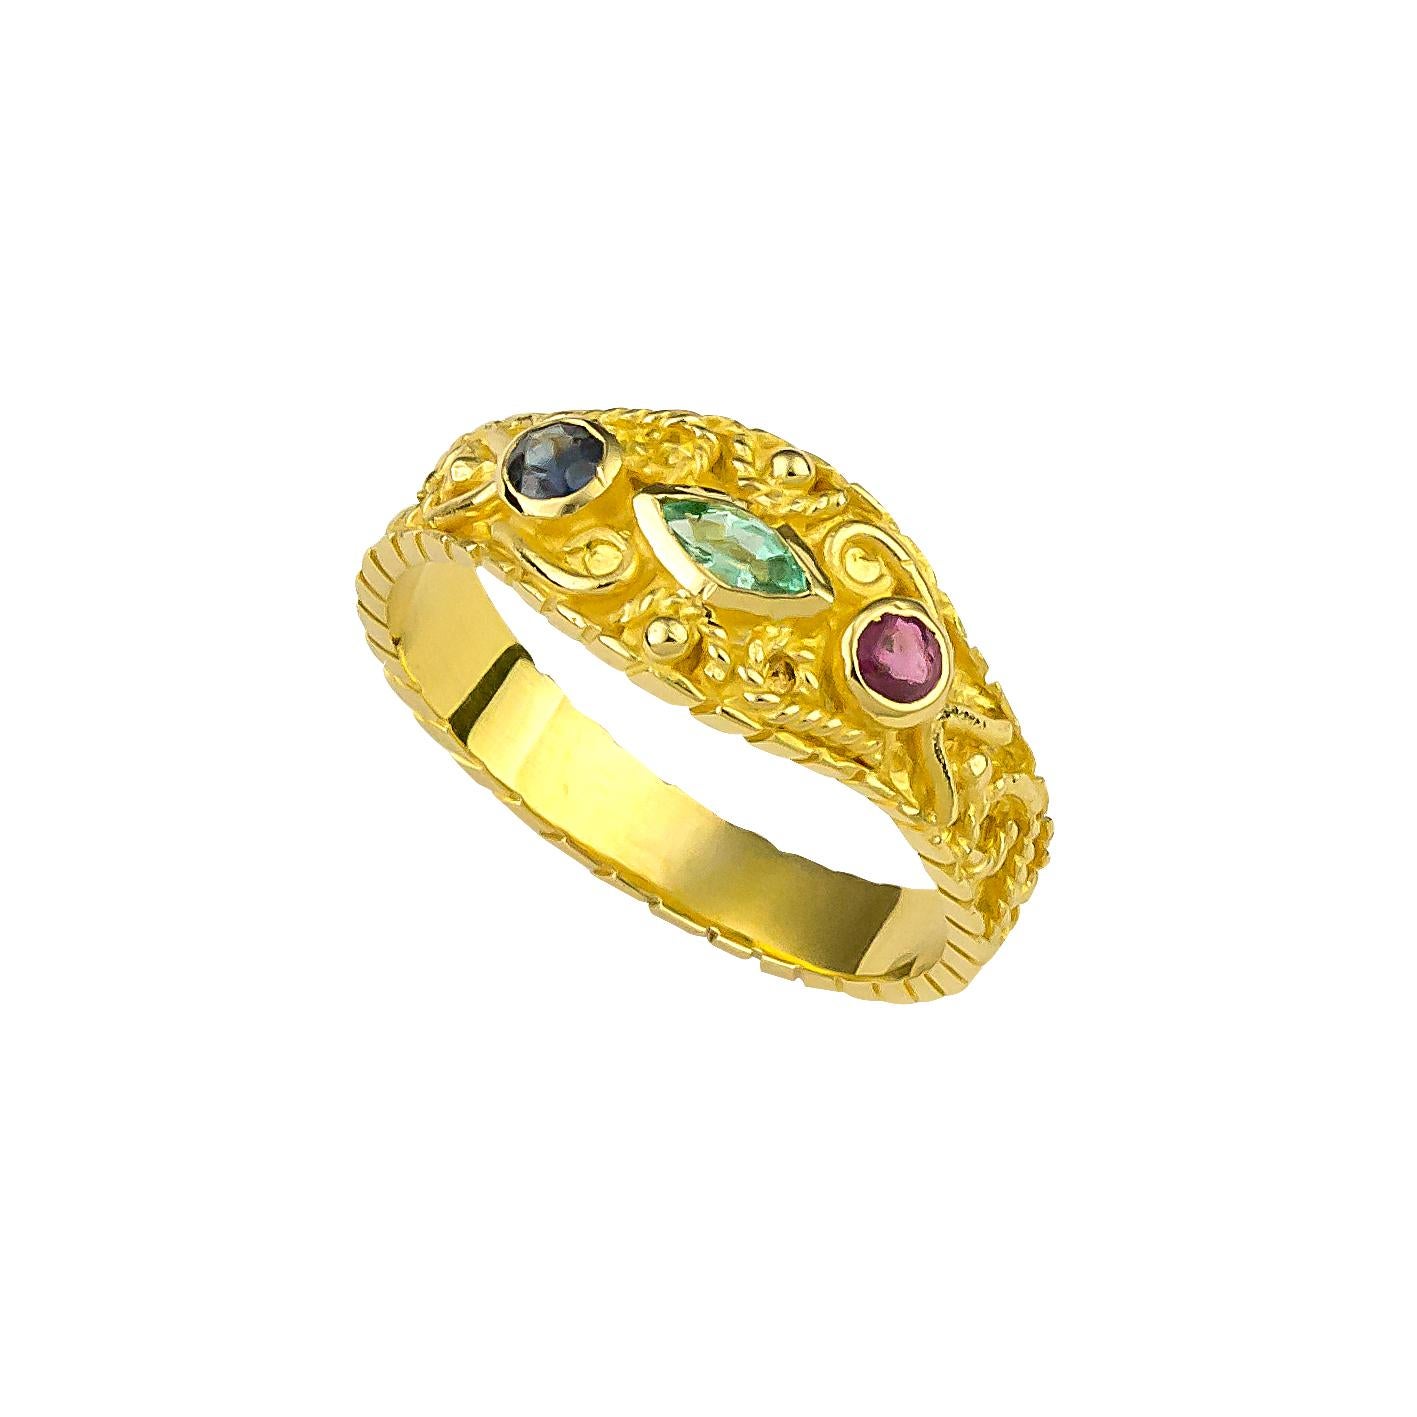 Diese S.Georgios Design multicolor 18 Karat Gelbgold Band Ring ist alles von Hand mit byzantinischer Handwerkskunst und hat Granulation Arbeit, die mikroskopisch gemacht wird. Er ist mit einem Smaragd im Marquiseschliff, einem Rubin und einem Saphir